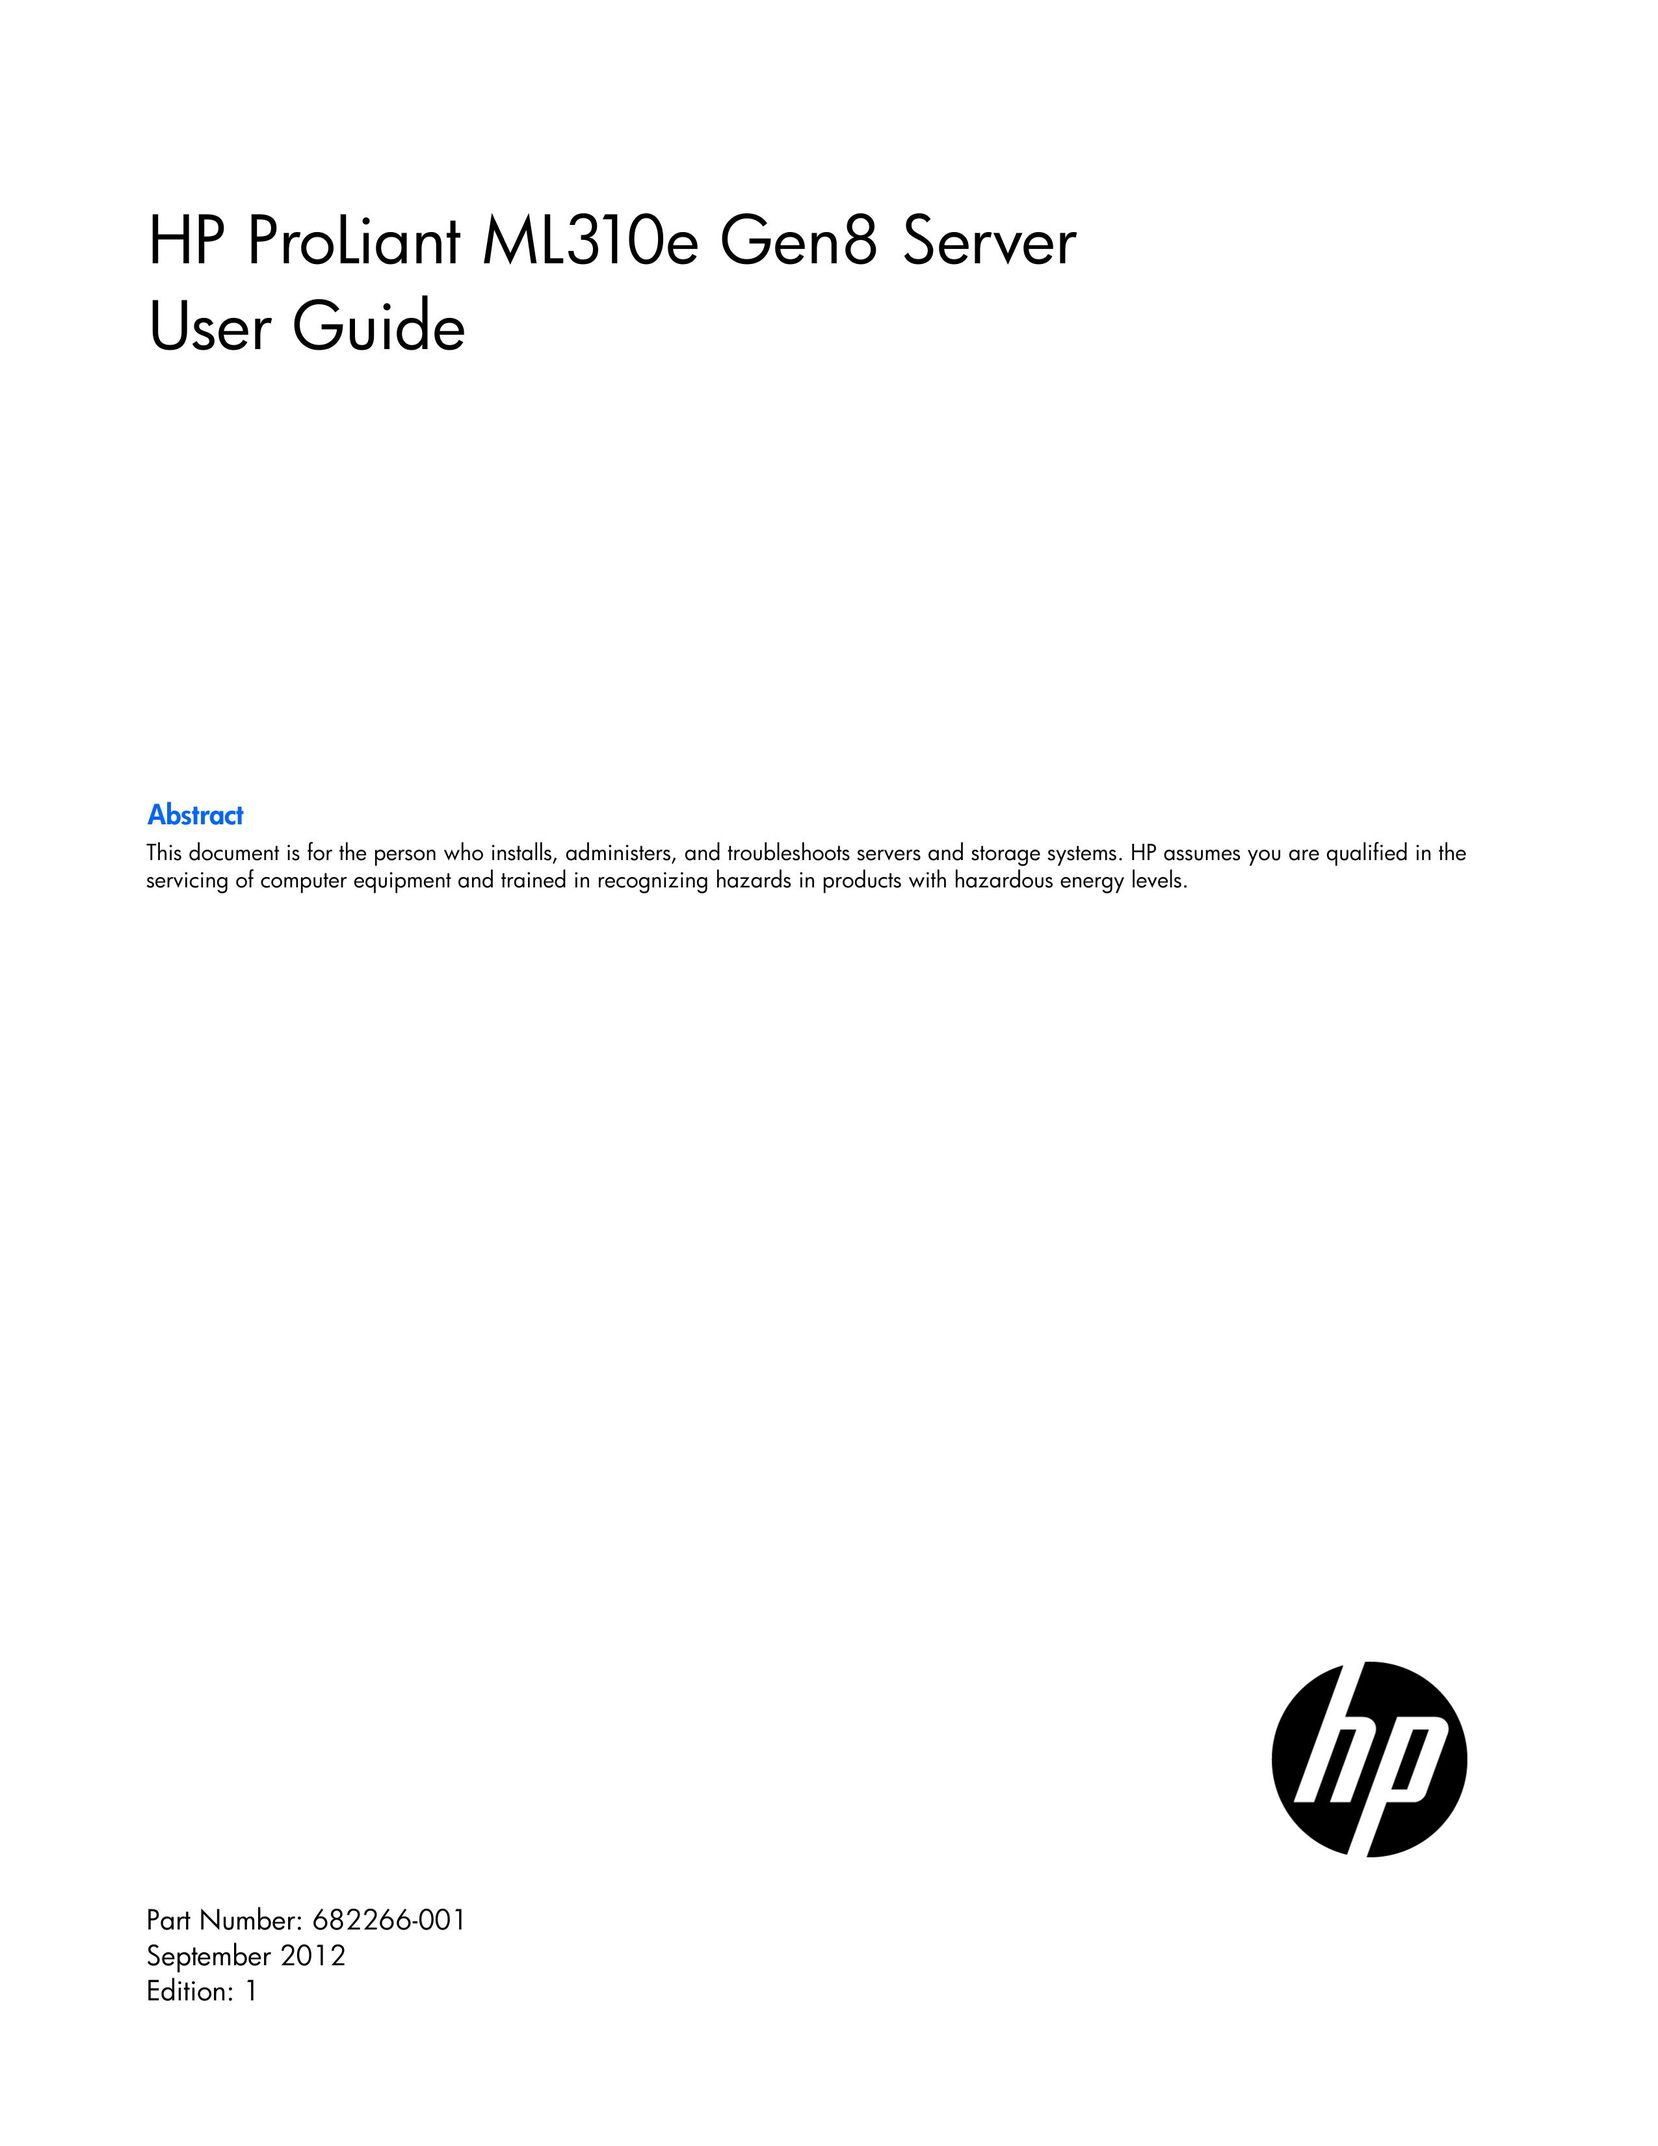 HP (Hewlett-Packard) 686234S01 Server User Manual